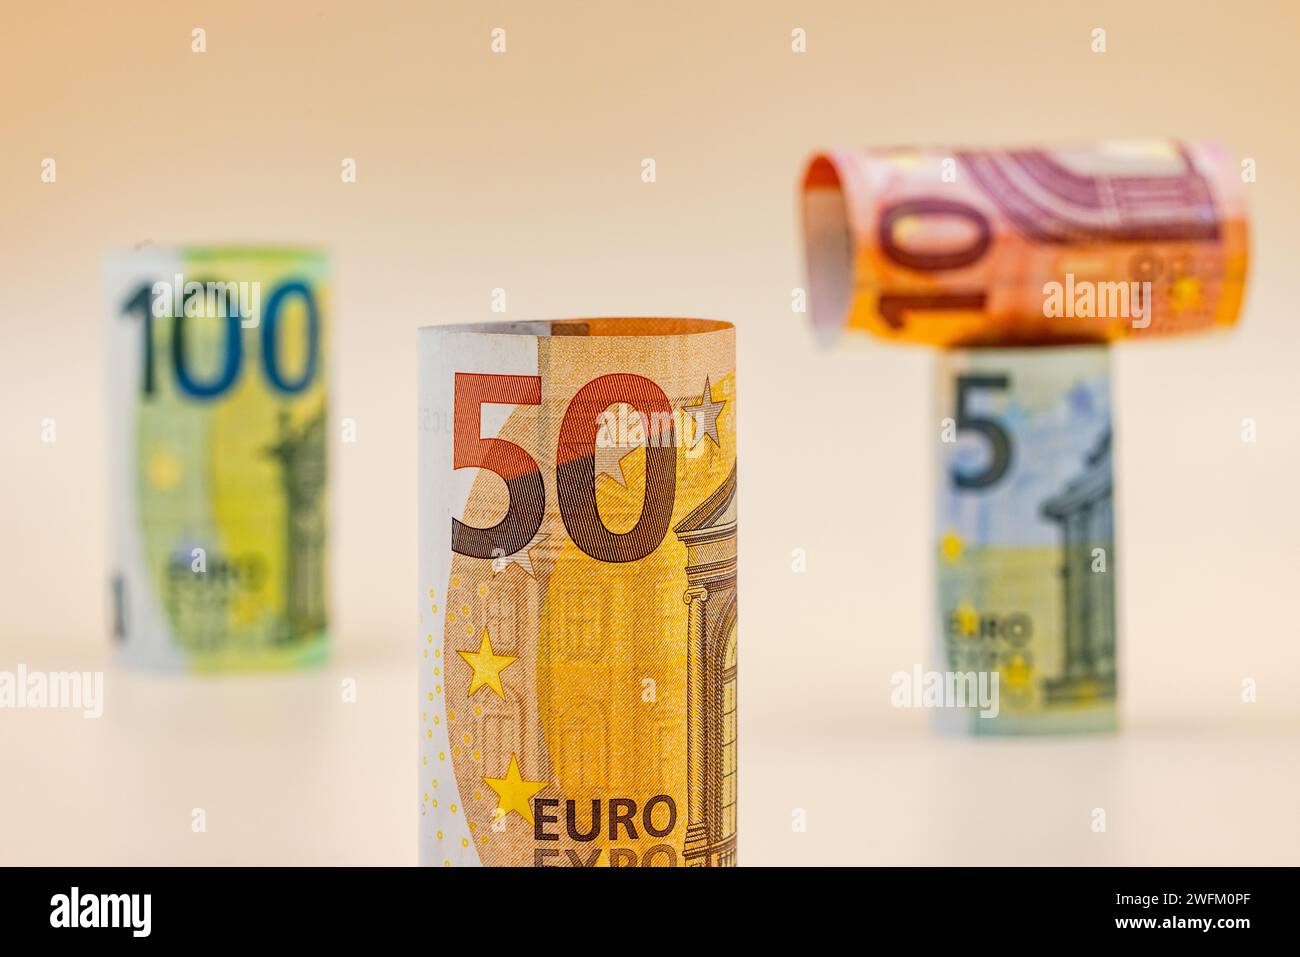 Le banconote dell'UE europee con moneta in euro come mezzo di pagamento in Europa sono state ritagliate sullo sfondo nello studio Foto Stock